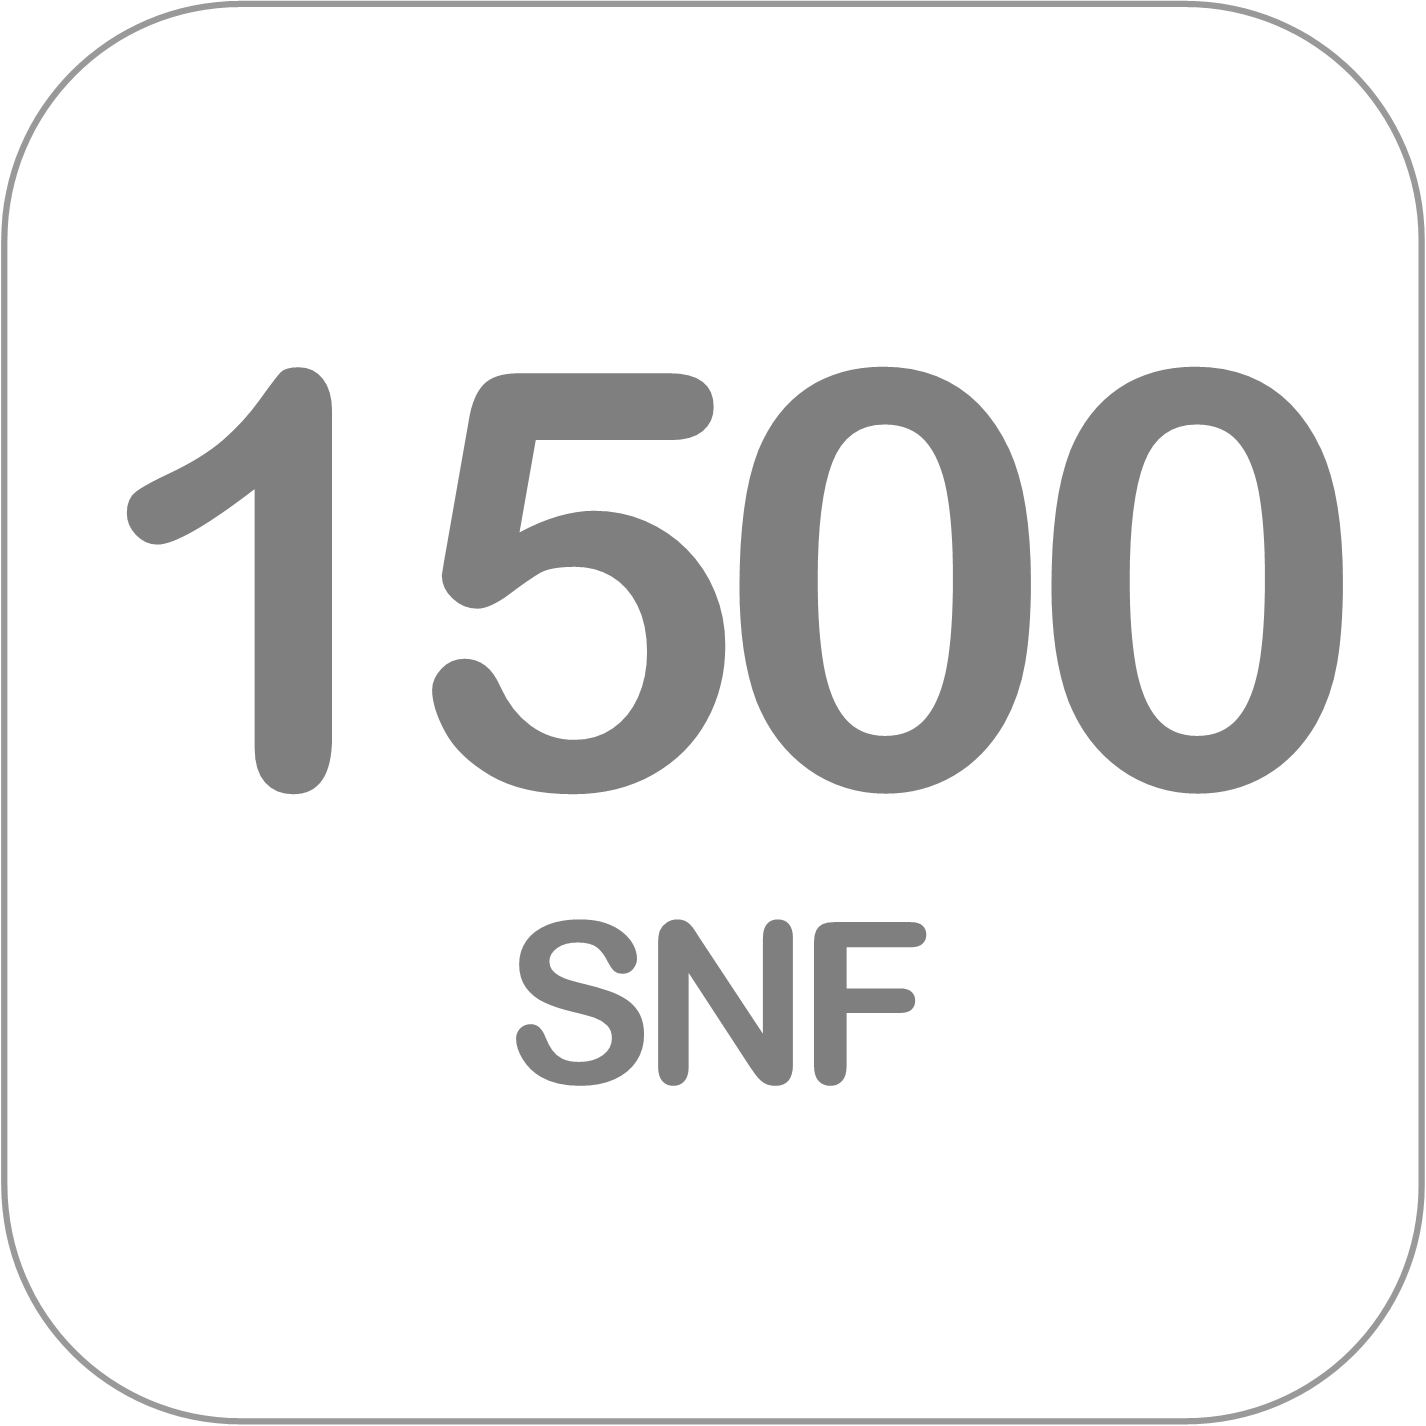 Volquete 1500 SNF